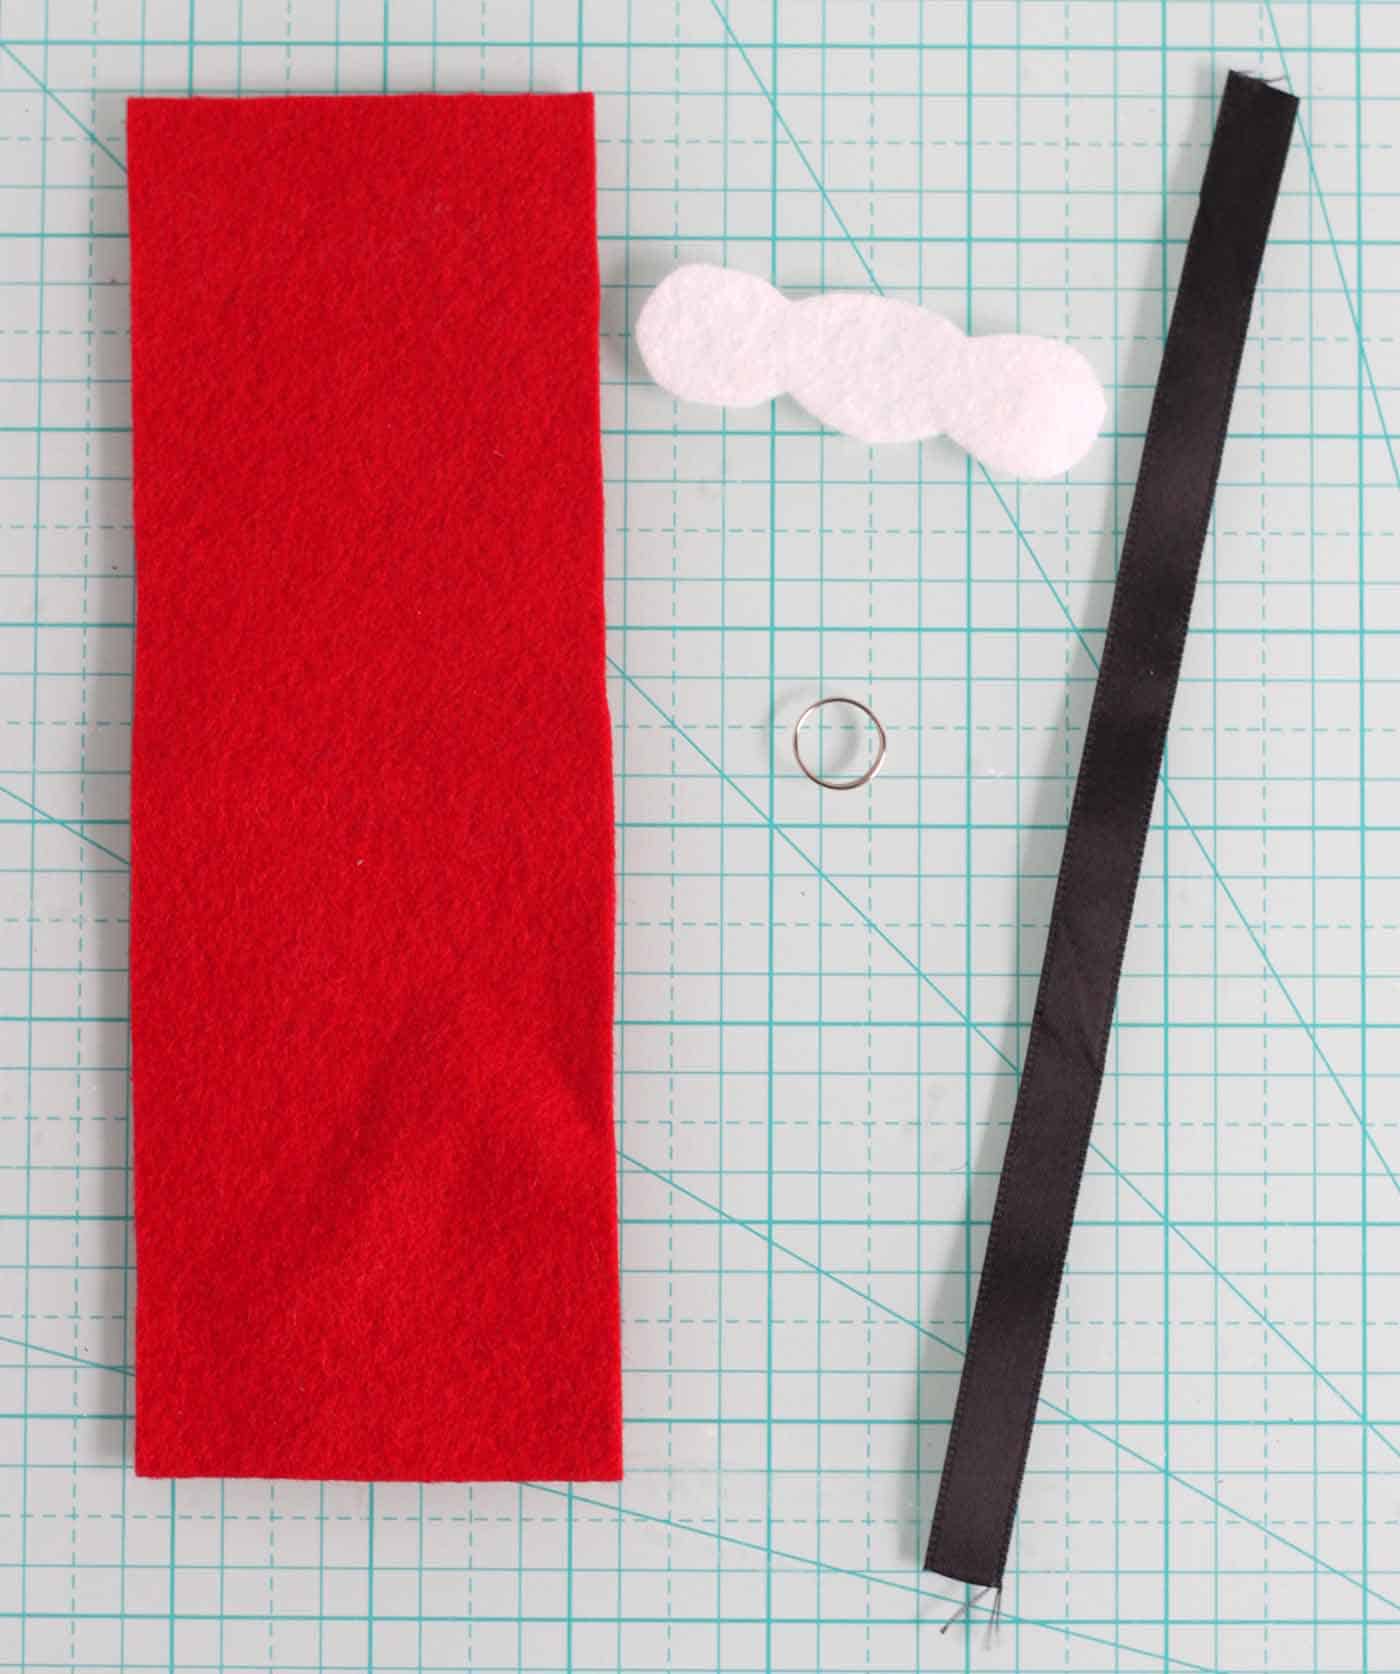 Red felt, white felt piece, split ring, and black satin ribbon